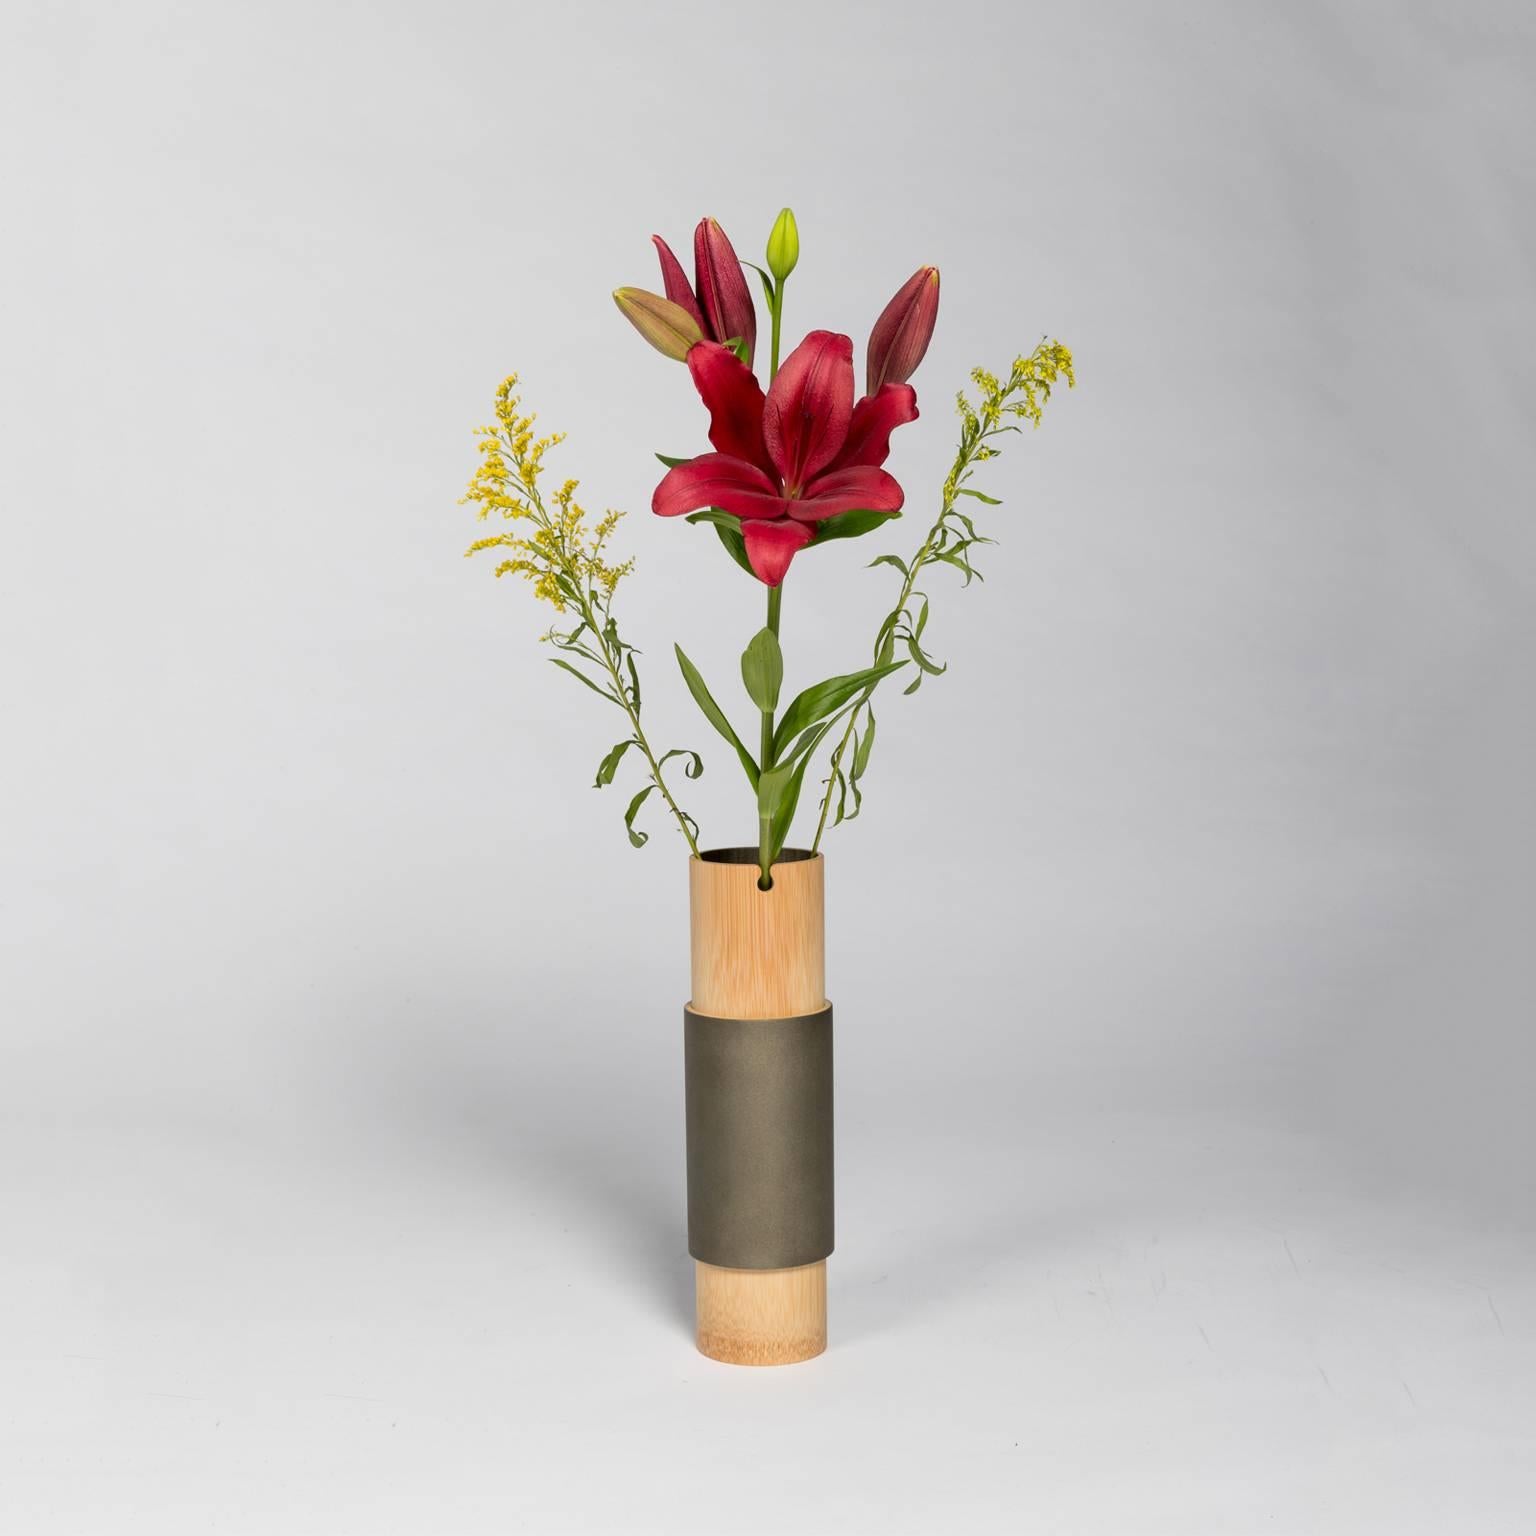 bamboo flower vase designs